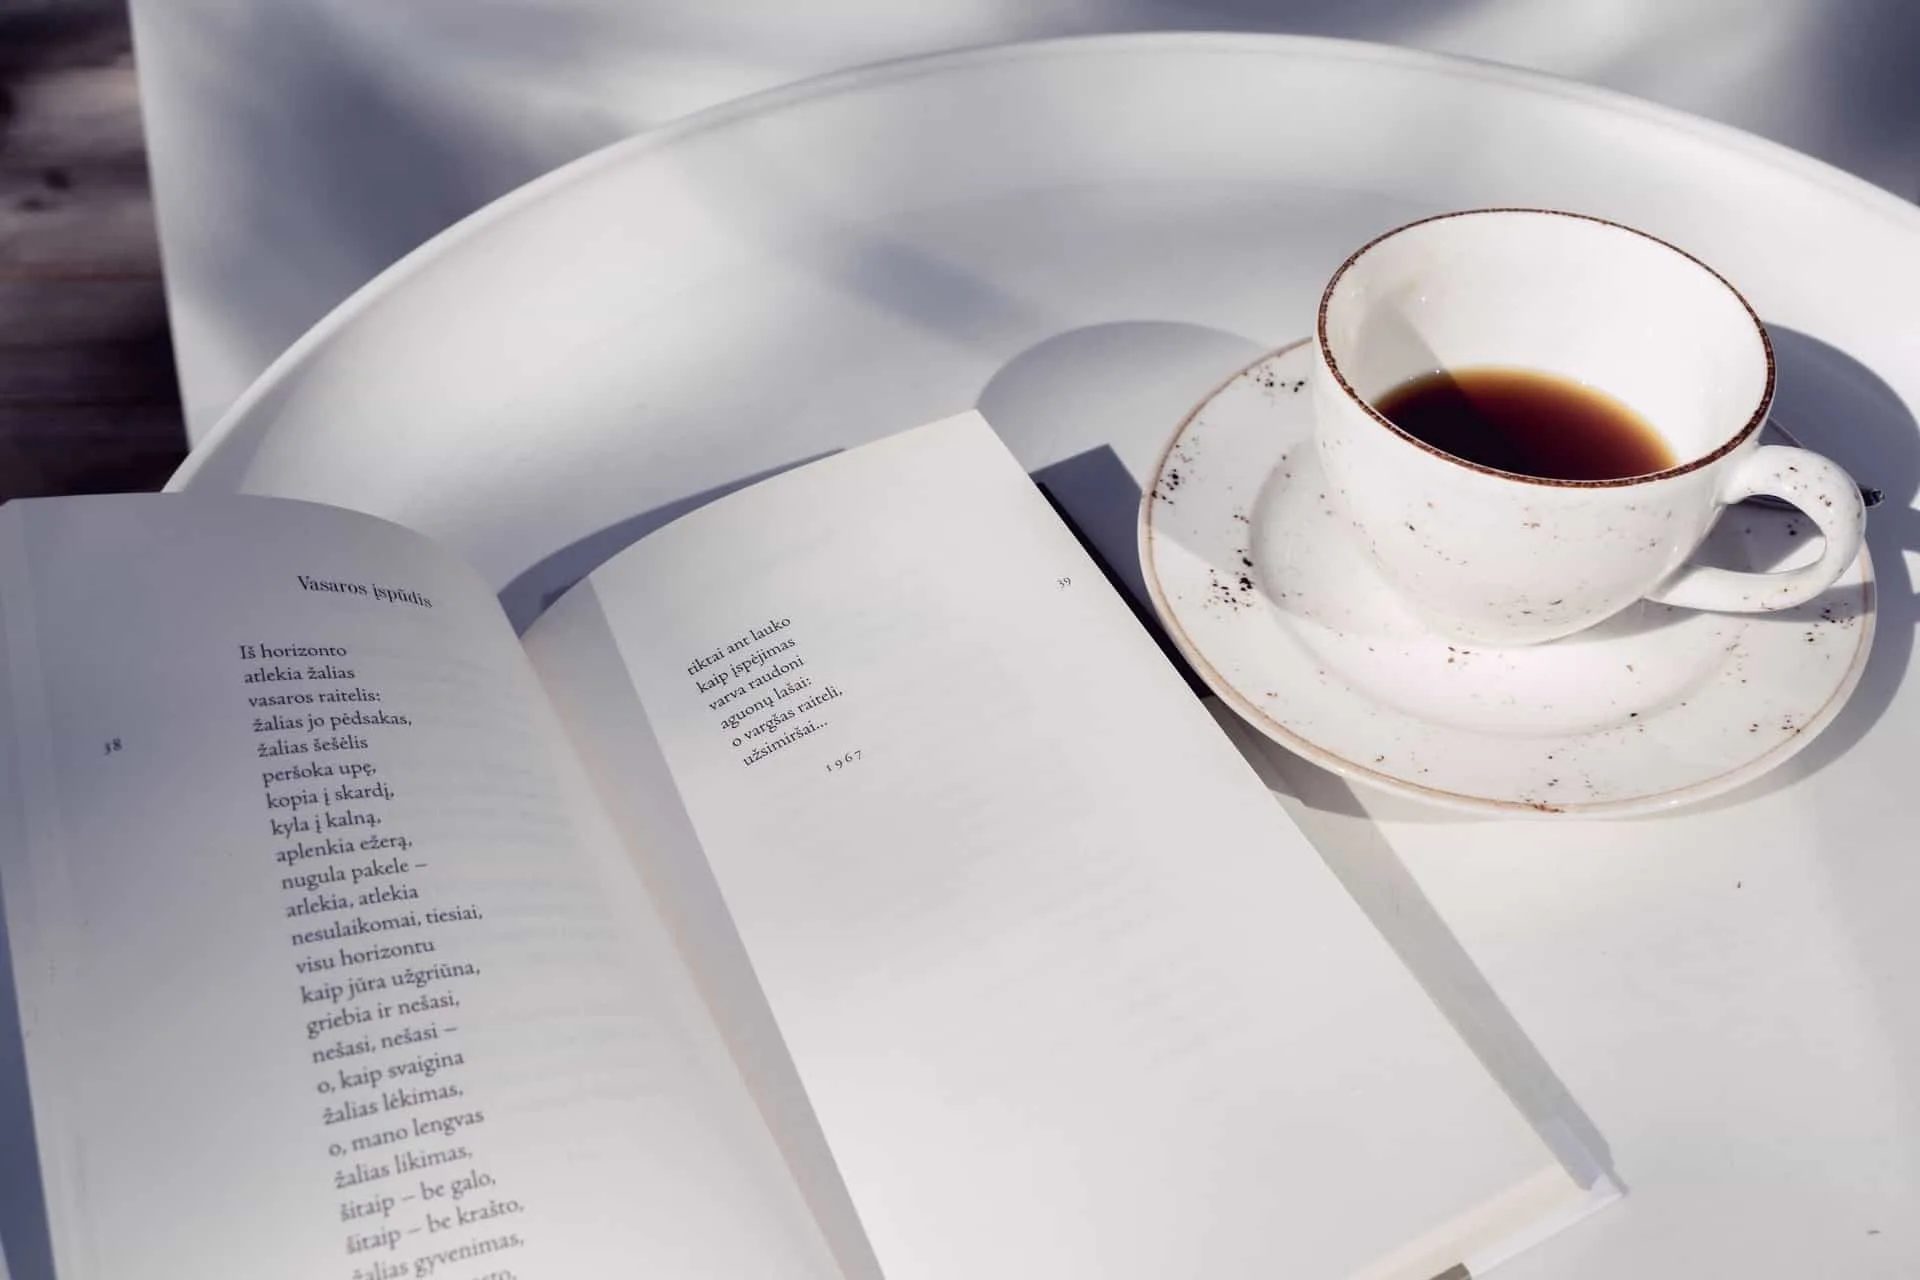  Ein Buch mit Gedichten auf einem Tablett neben Kaffee